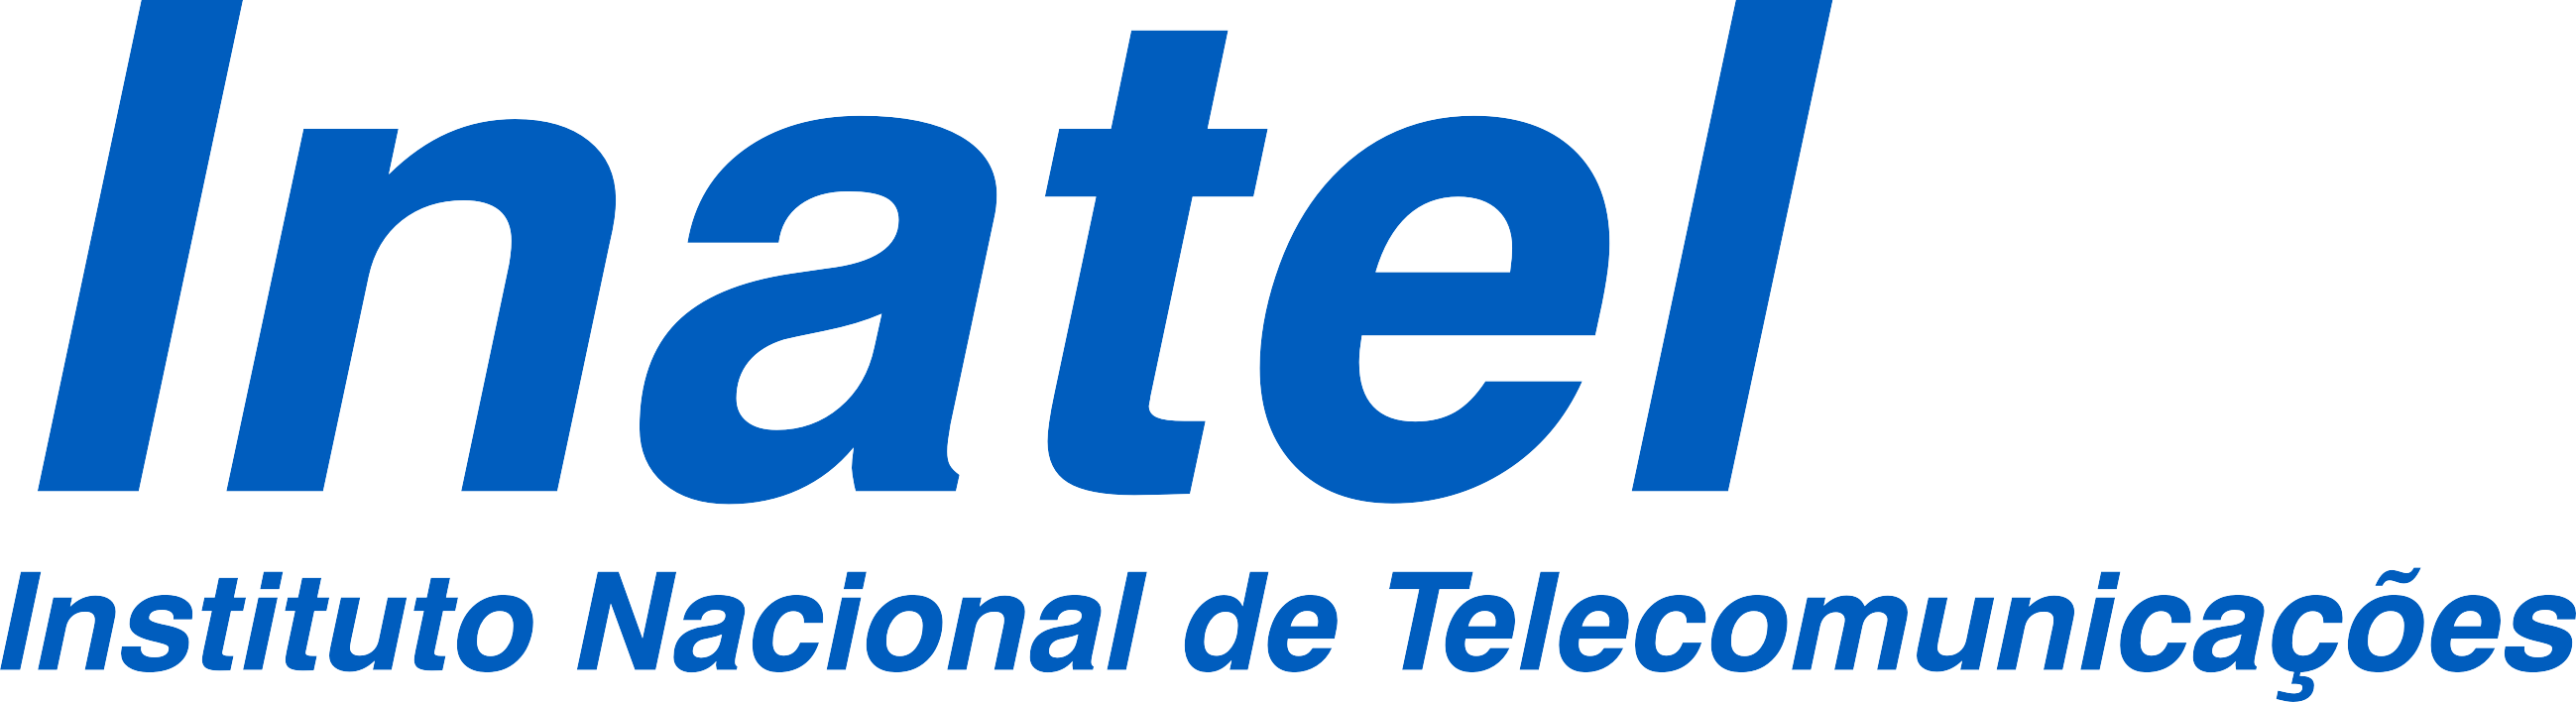 Instituto Nacional de Telecomunicações